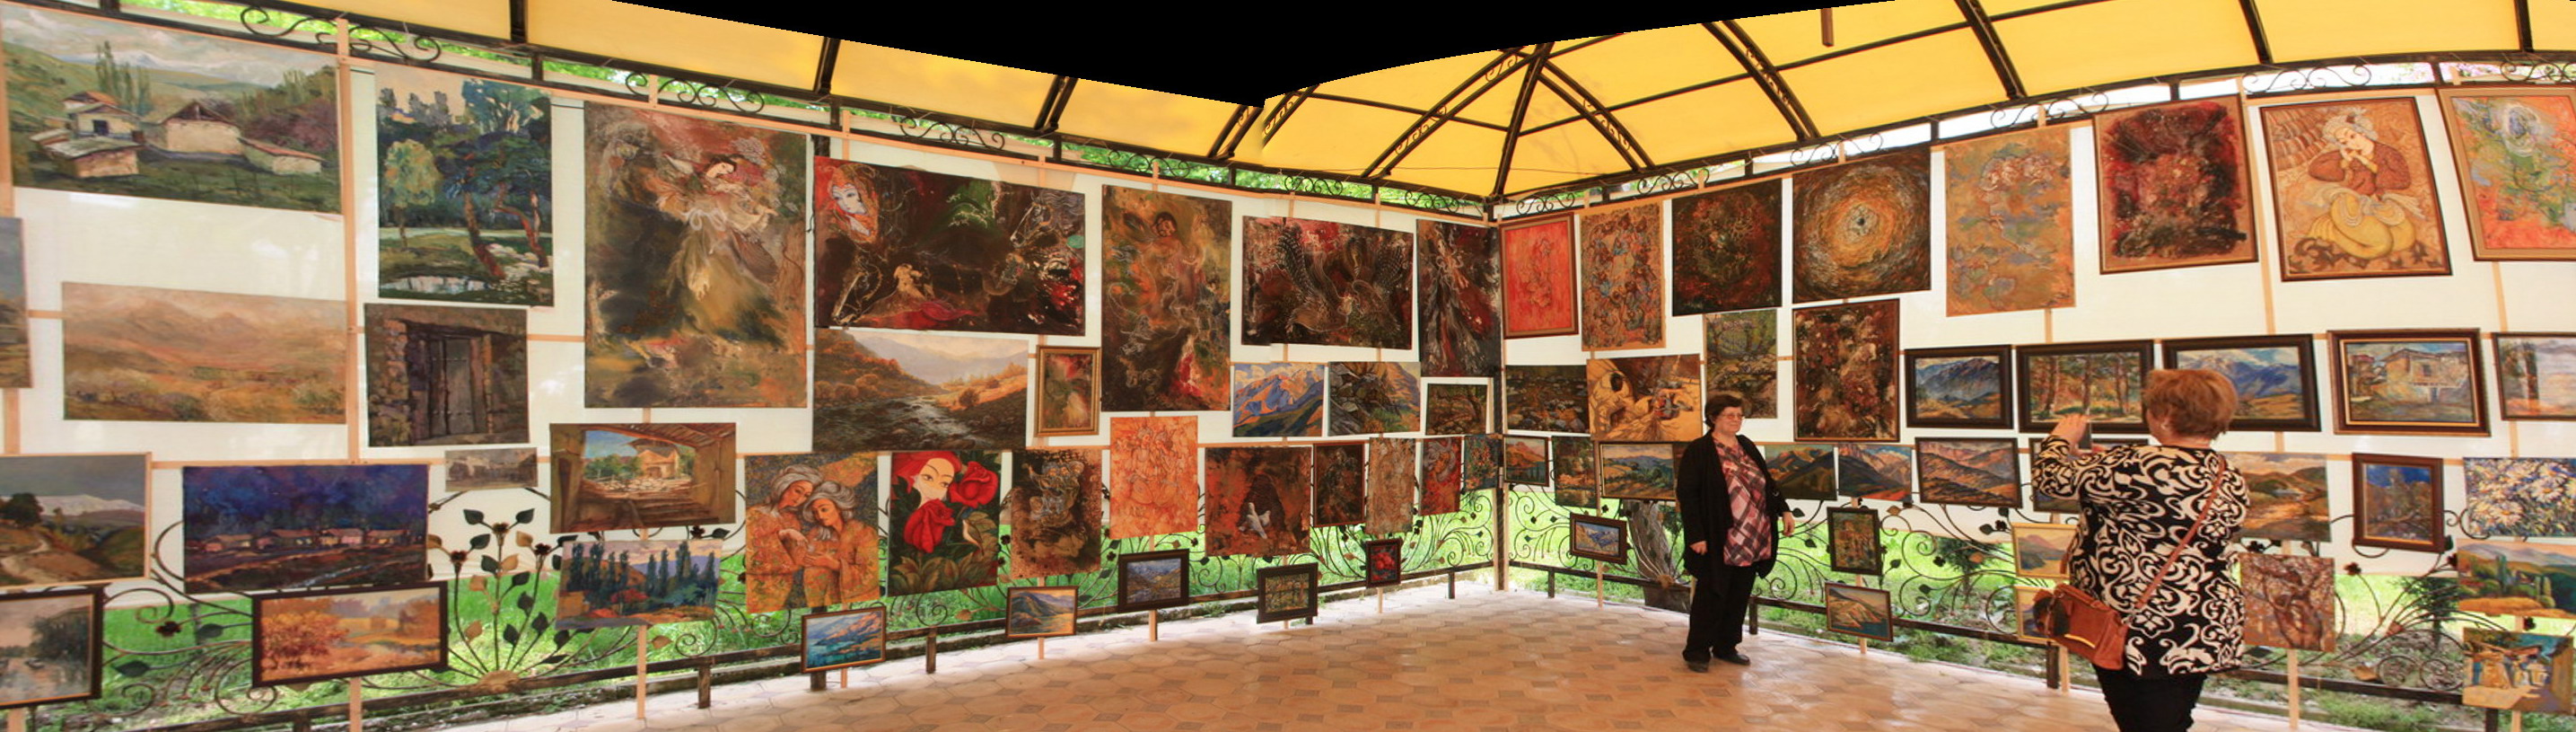 Экспозиция картин группы Эски шахар.